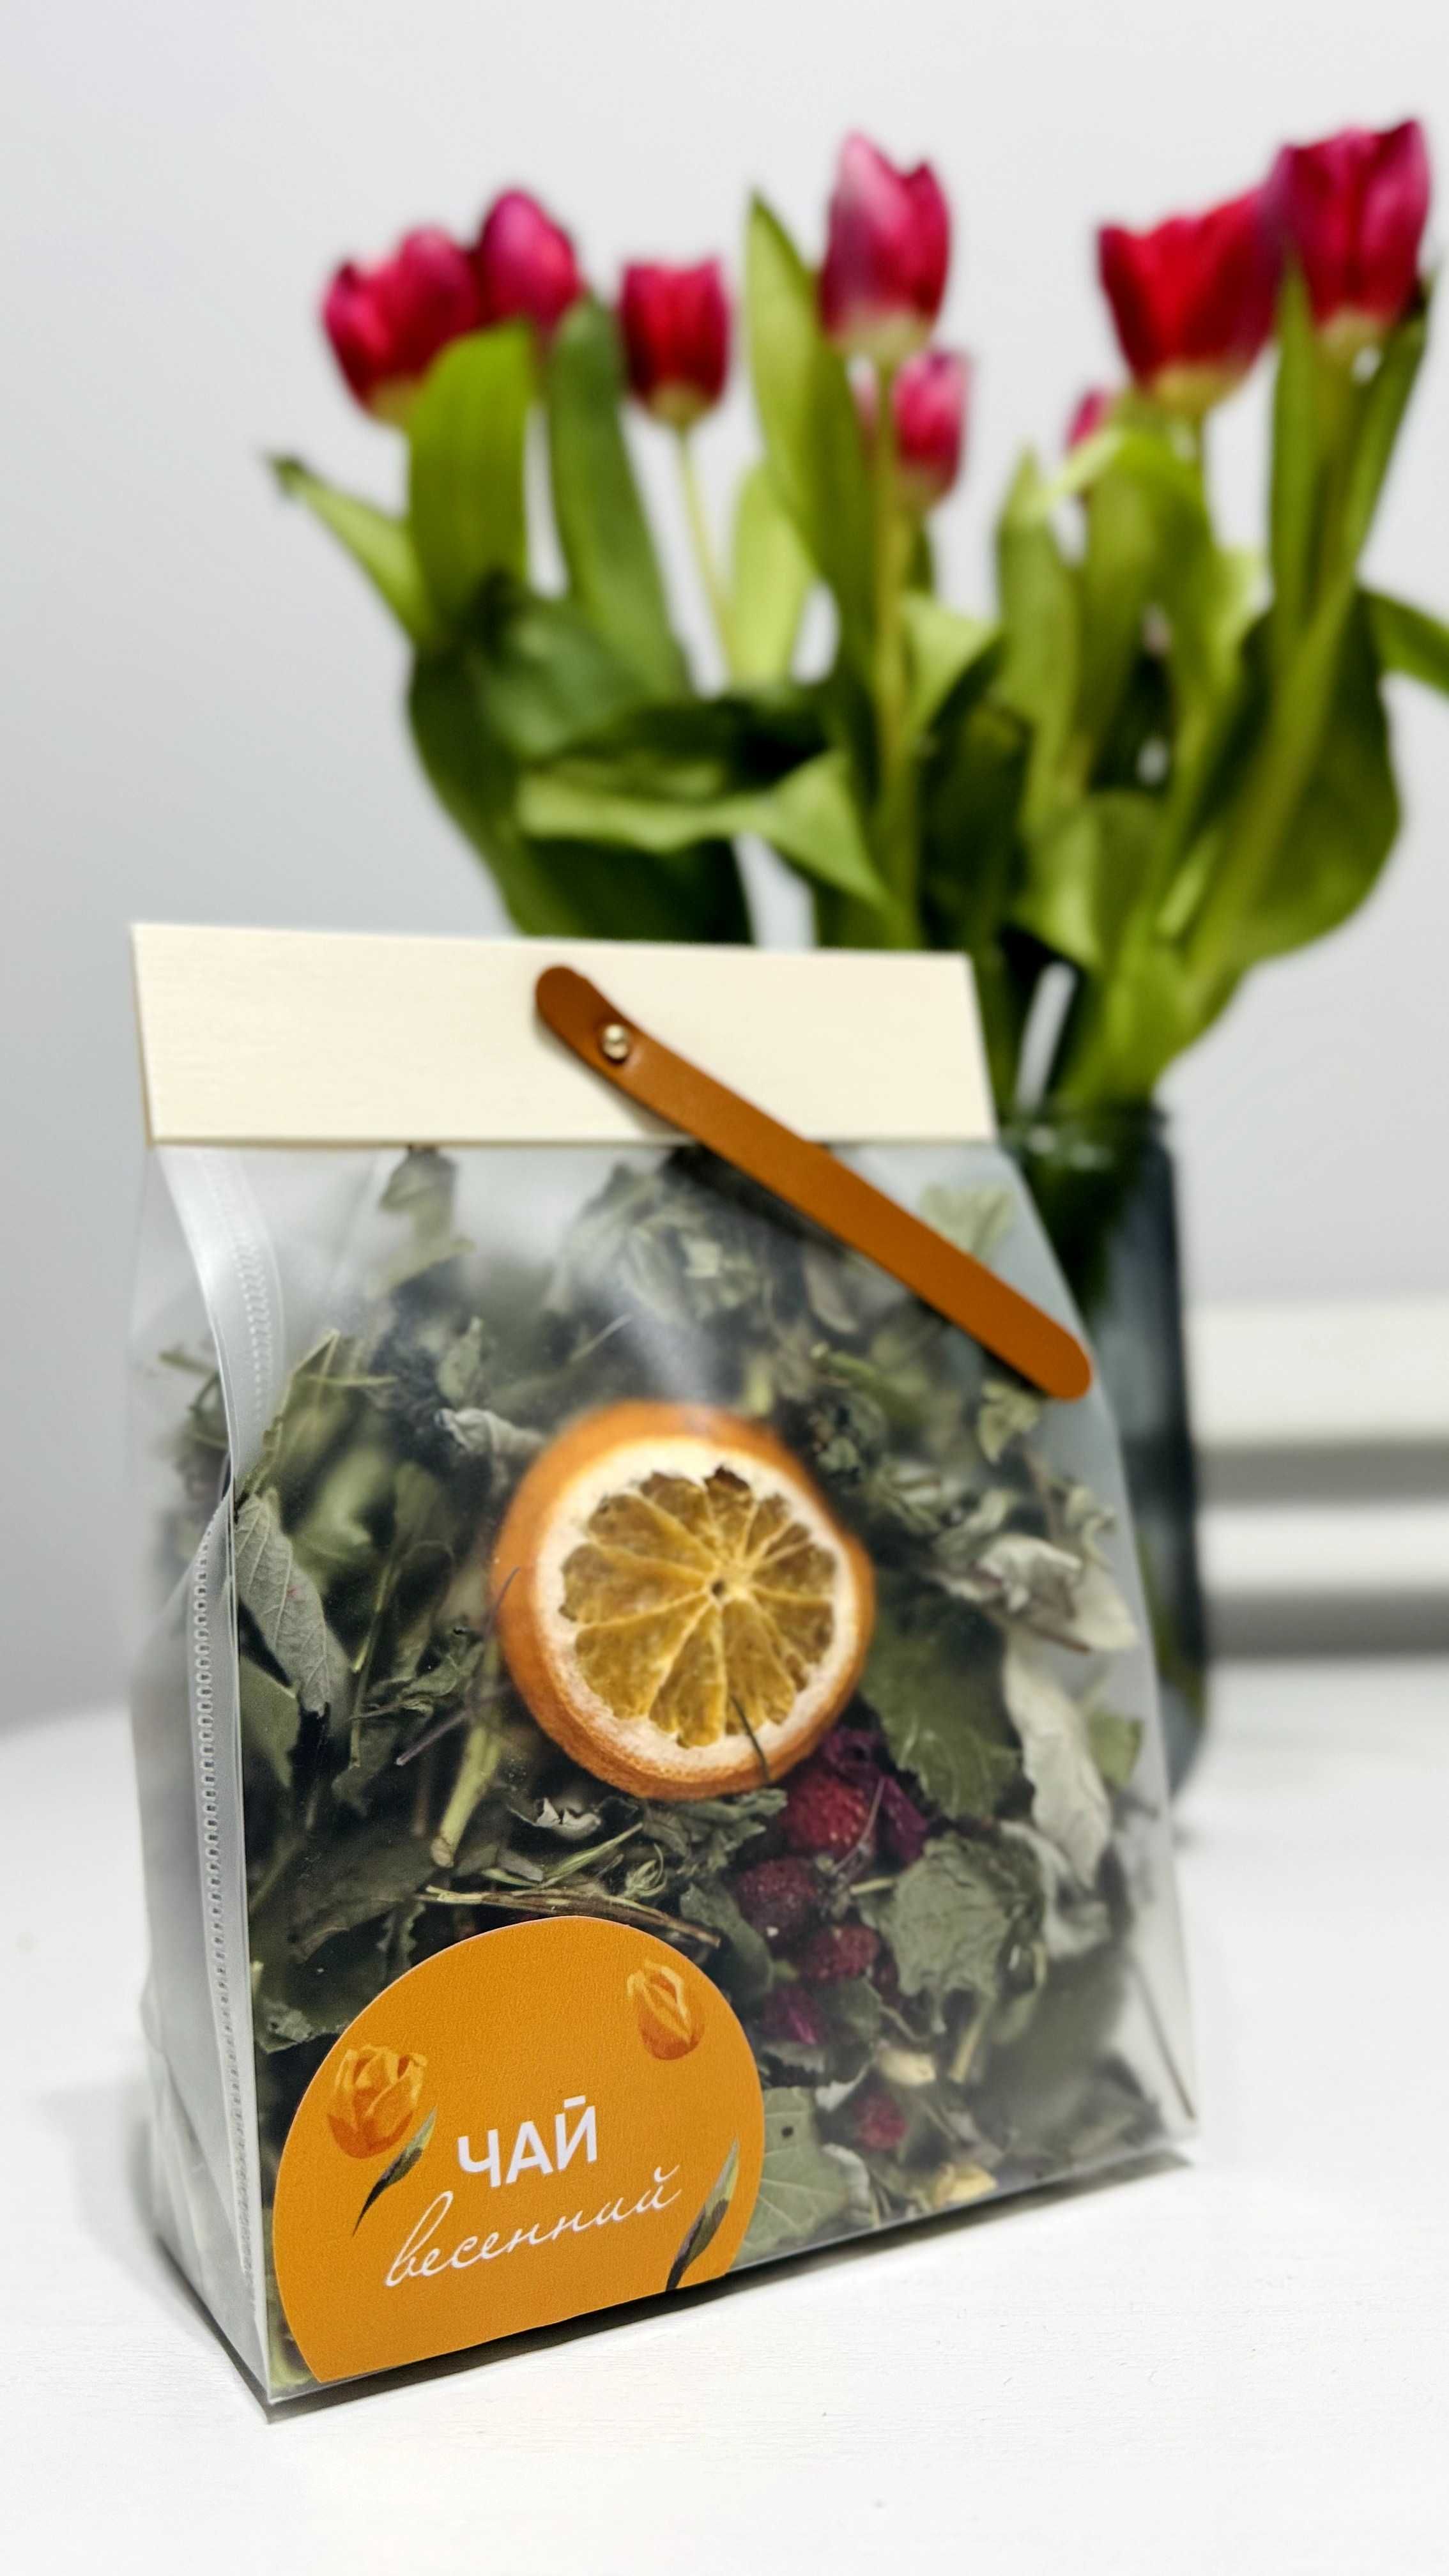 Алтайский травяной чай "Весенний" с земляникой и апельсином